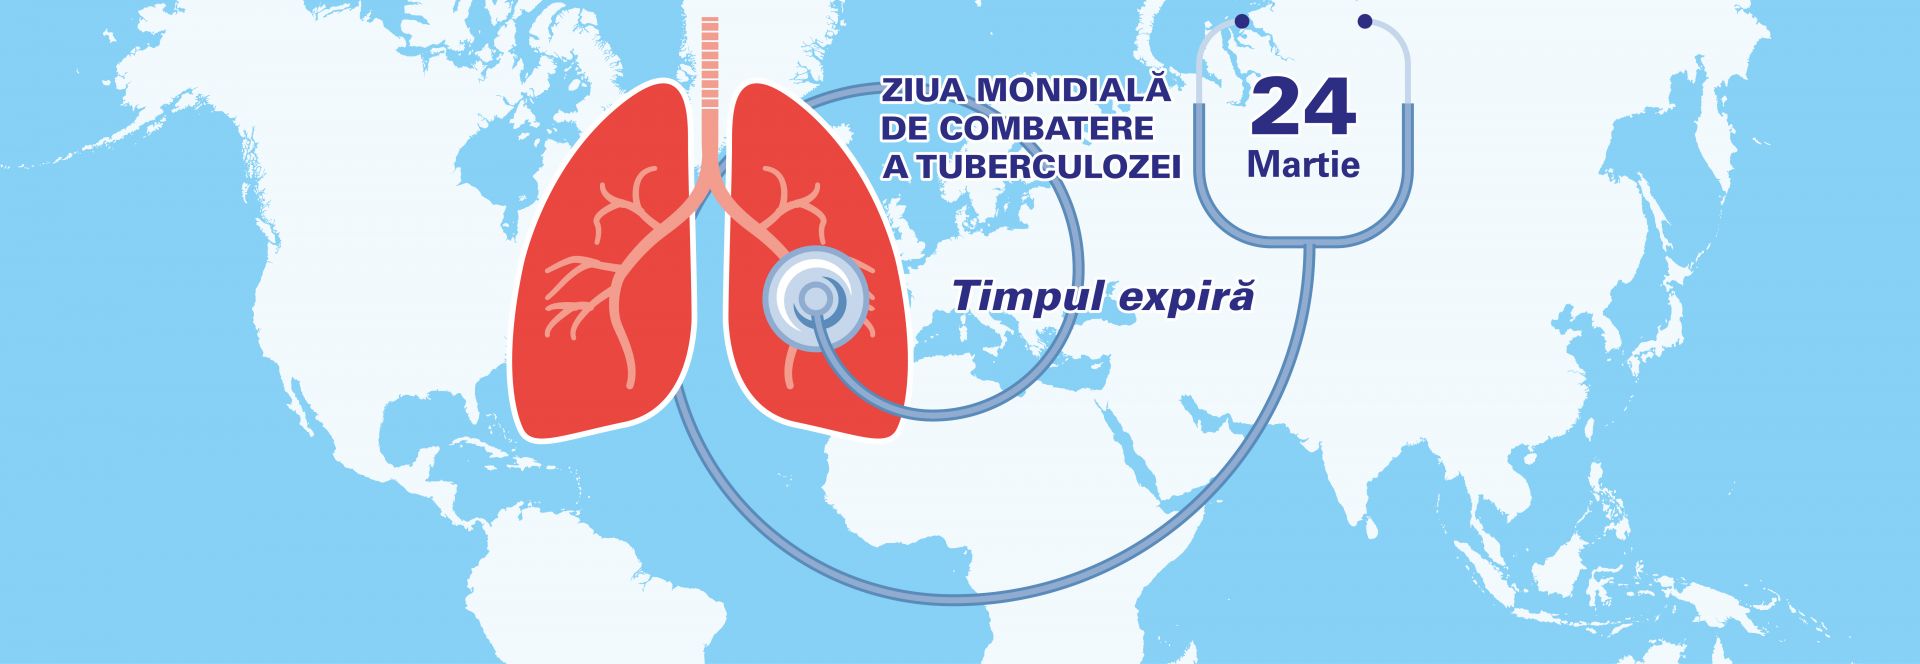 Ziua Mondială de Combatere a Tuberculozei